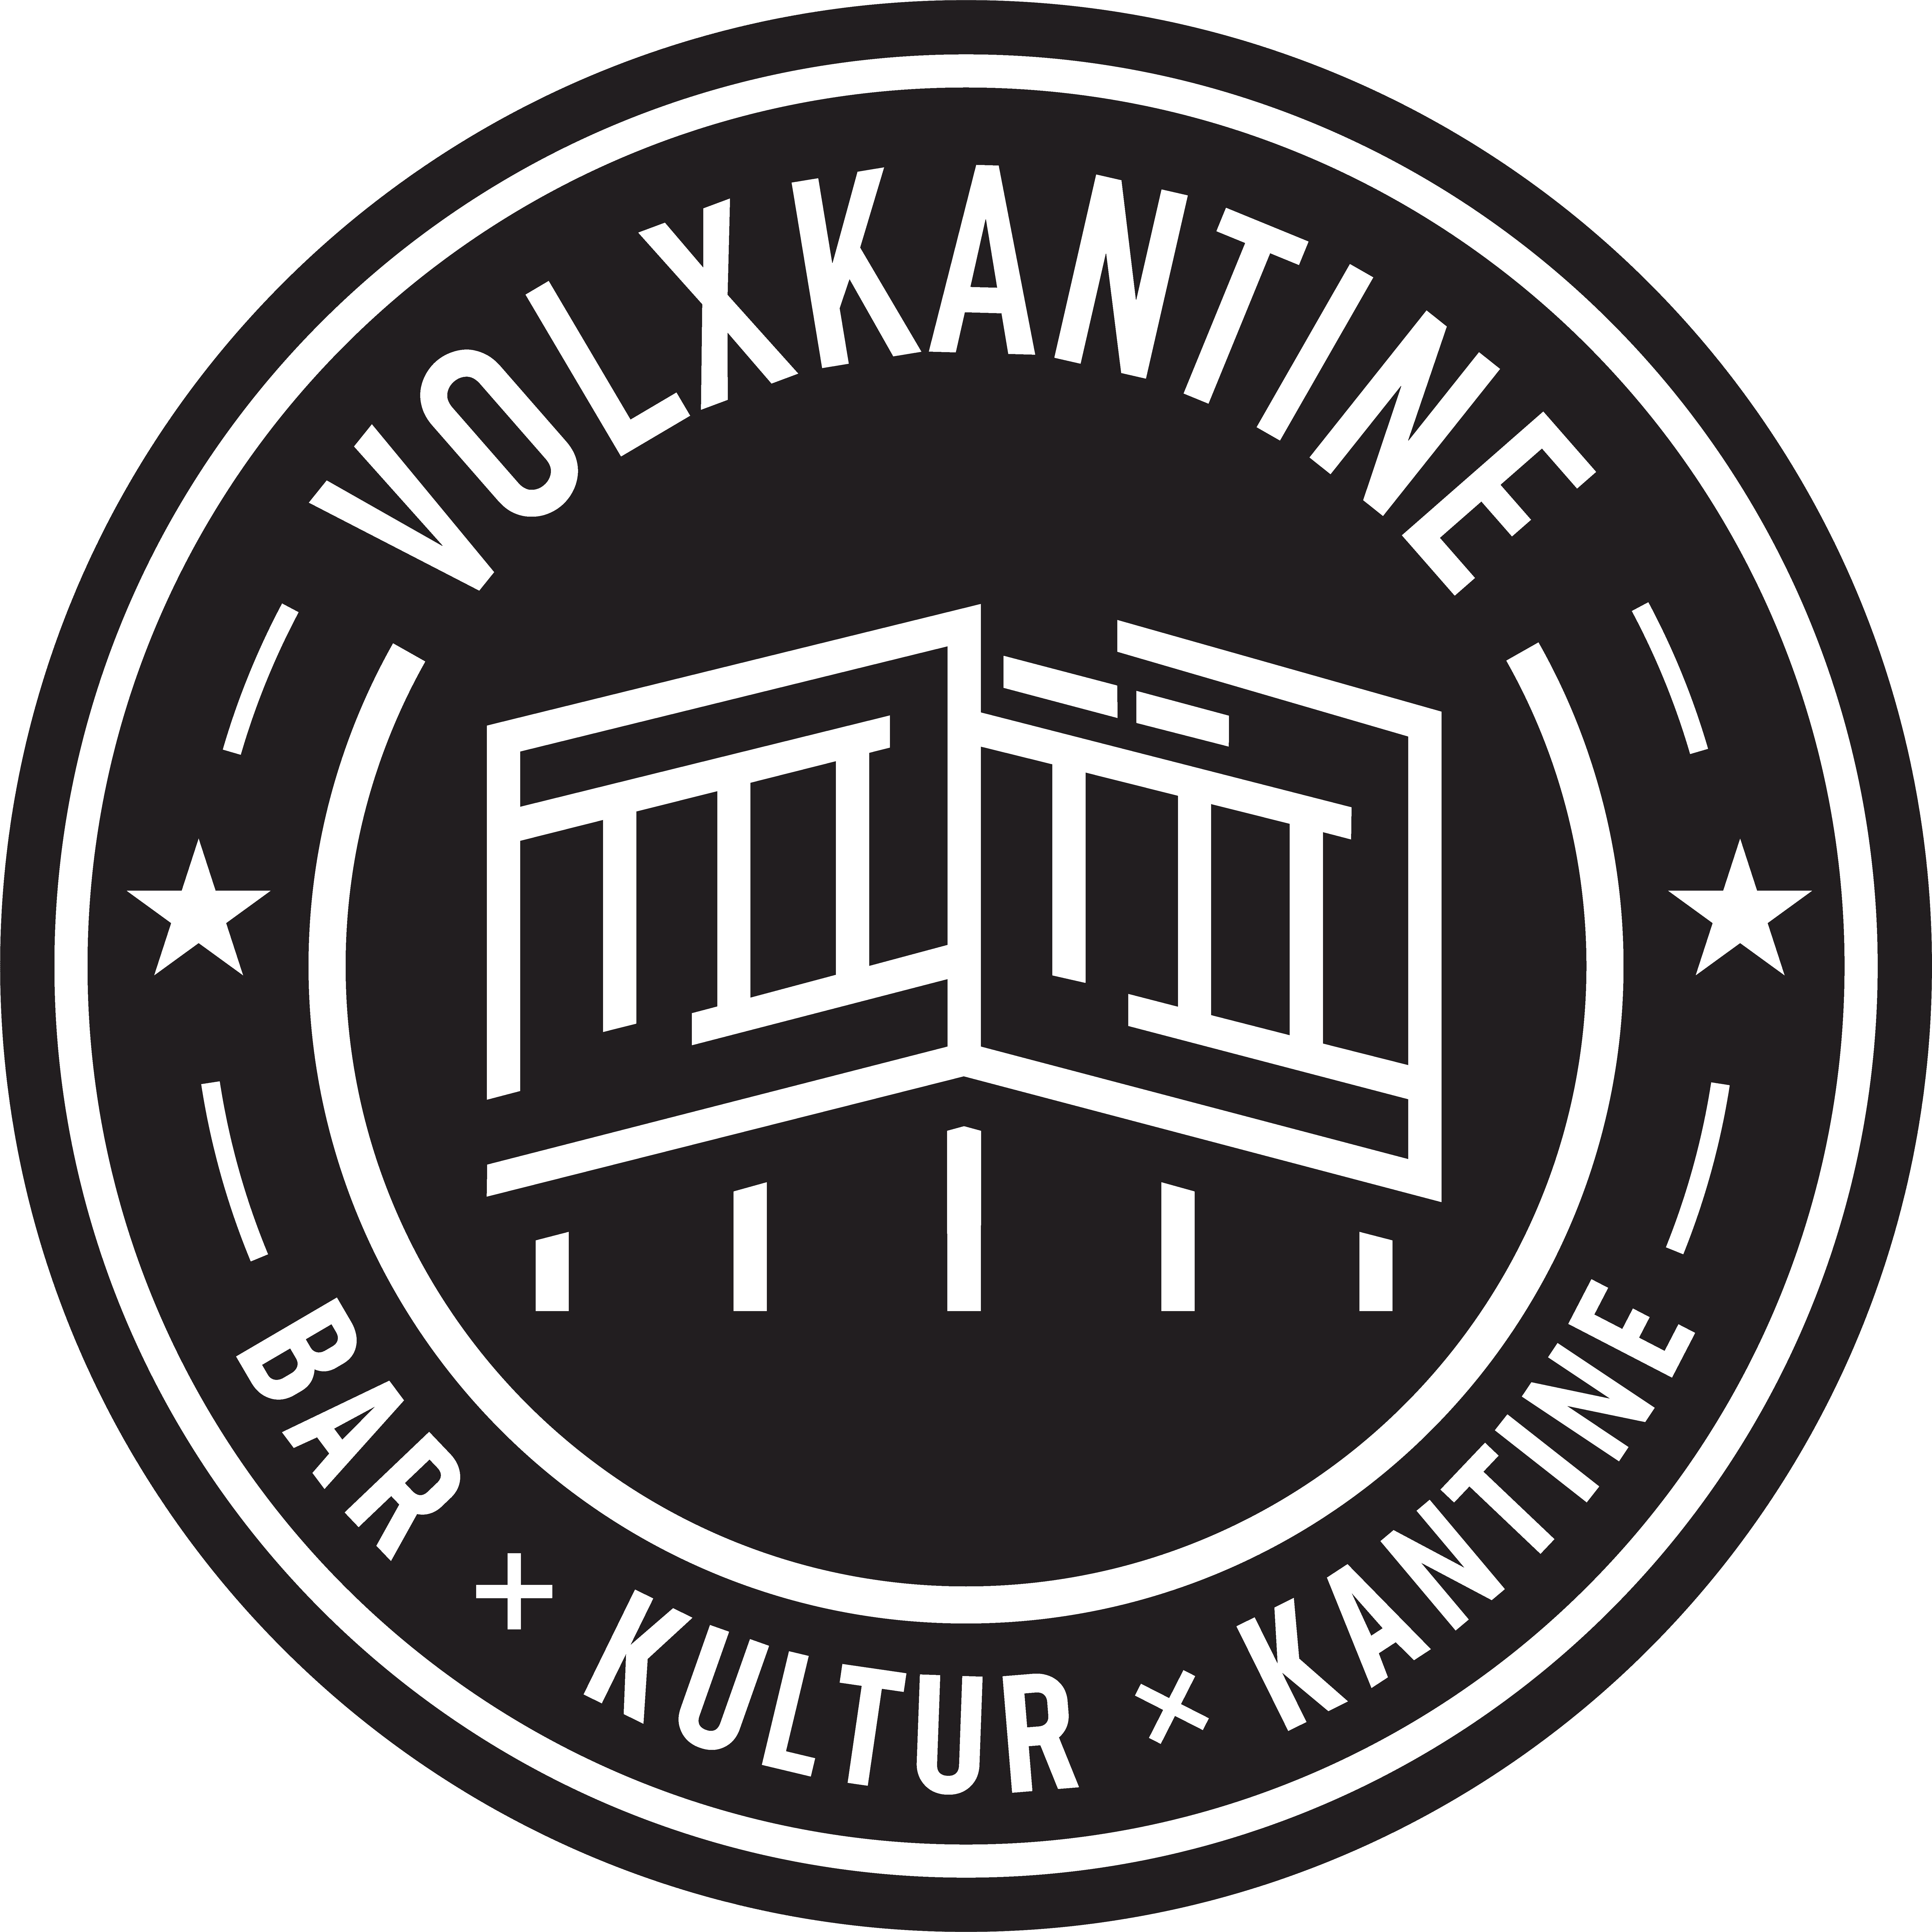 Kolxkantine – Bar, Kultur, Kantine